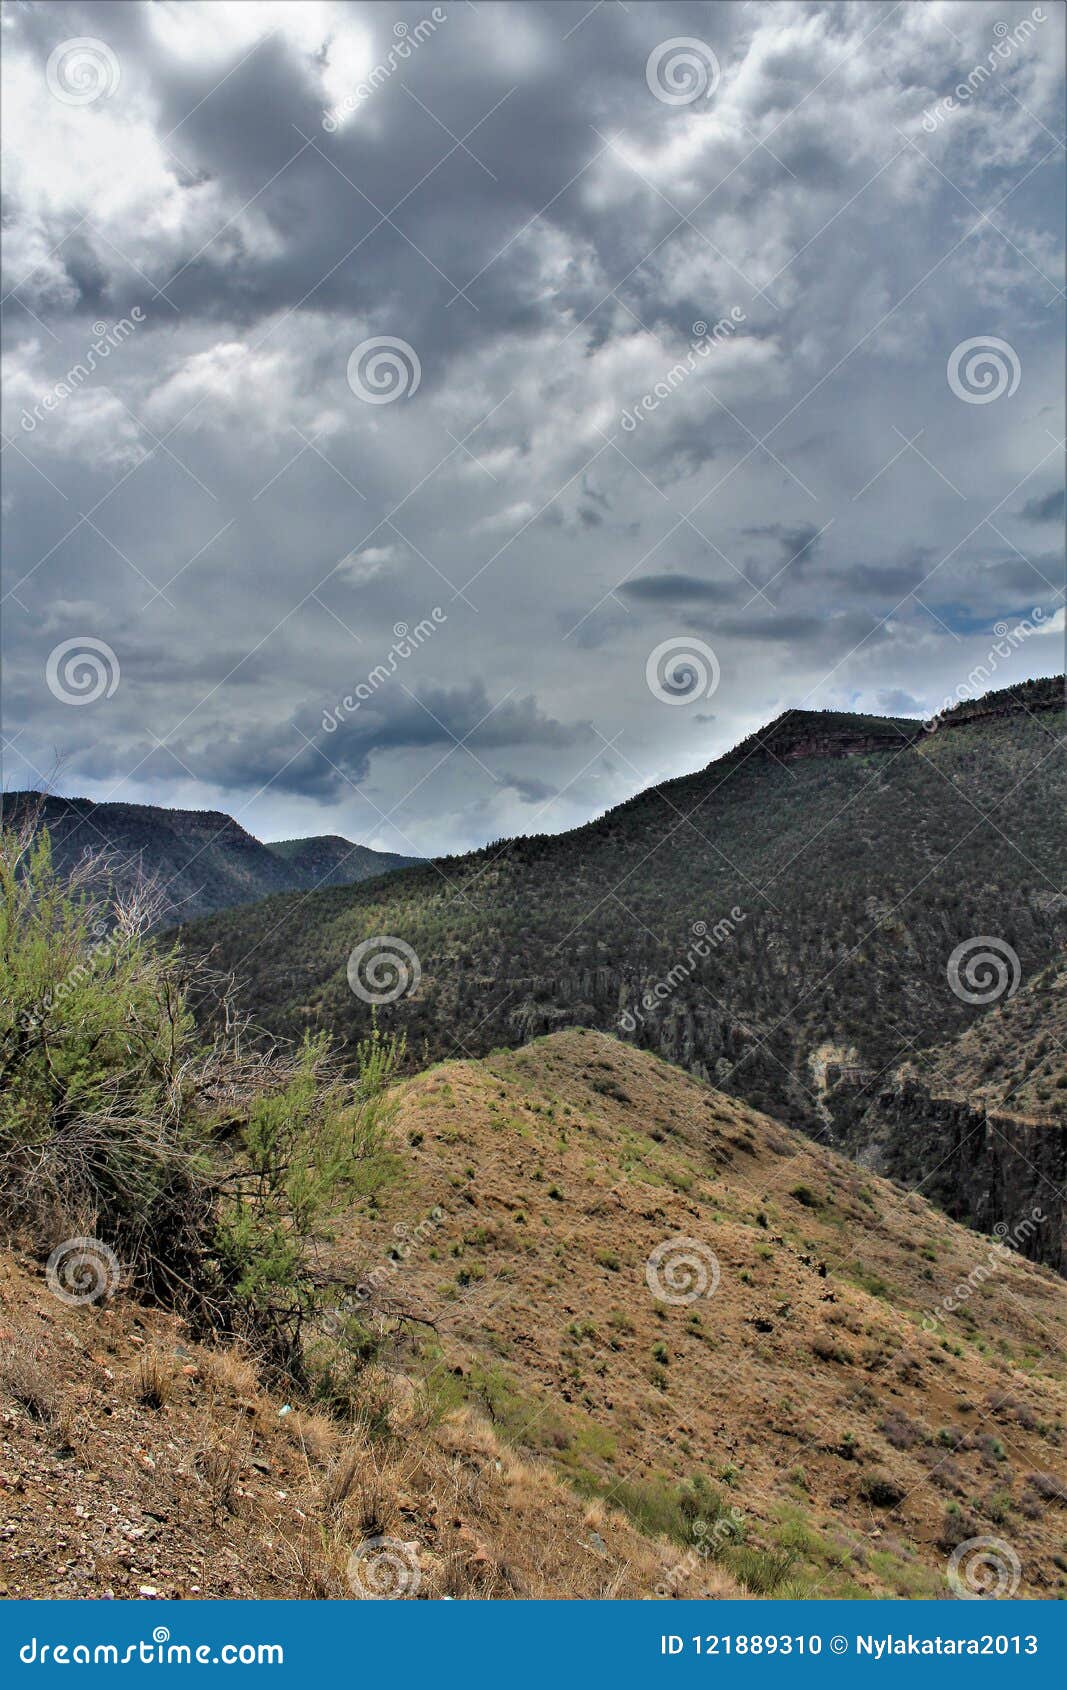 Άσπρη ινδική επιφύλαξη Apache βουνών, Αριζόνα, Ηνωμένες Πολιτείες. Φυσική άποψη τοπίων της άσπρης βουνών περιοχής επιφύλαξης Apache ινδικής εντοπίζω στην Αριζόνα, Ηνωμένες Πολιτείες